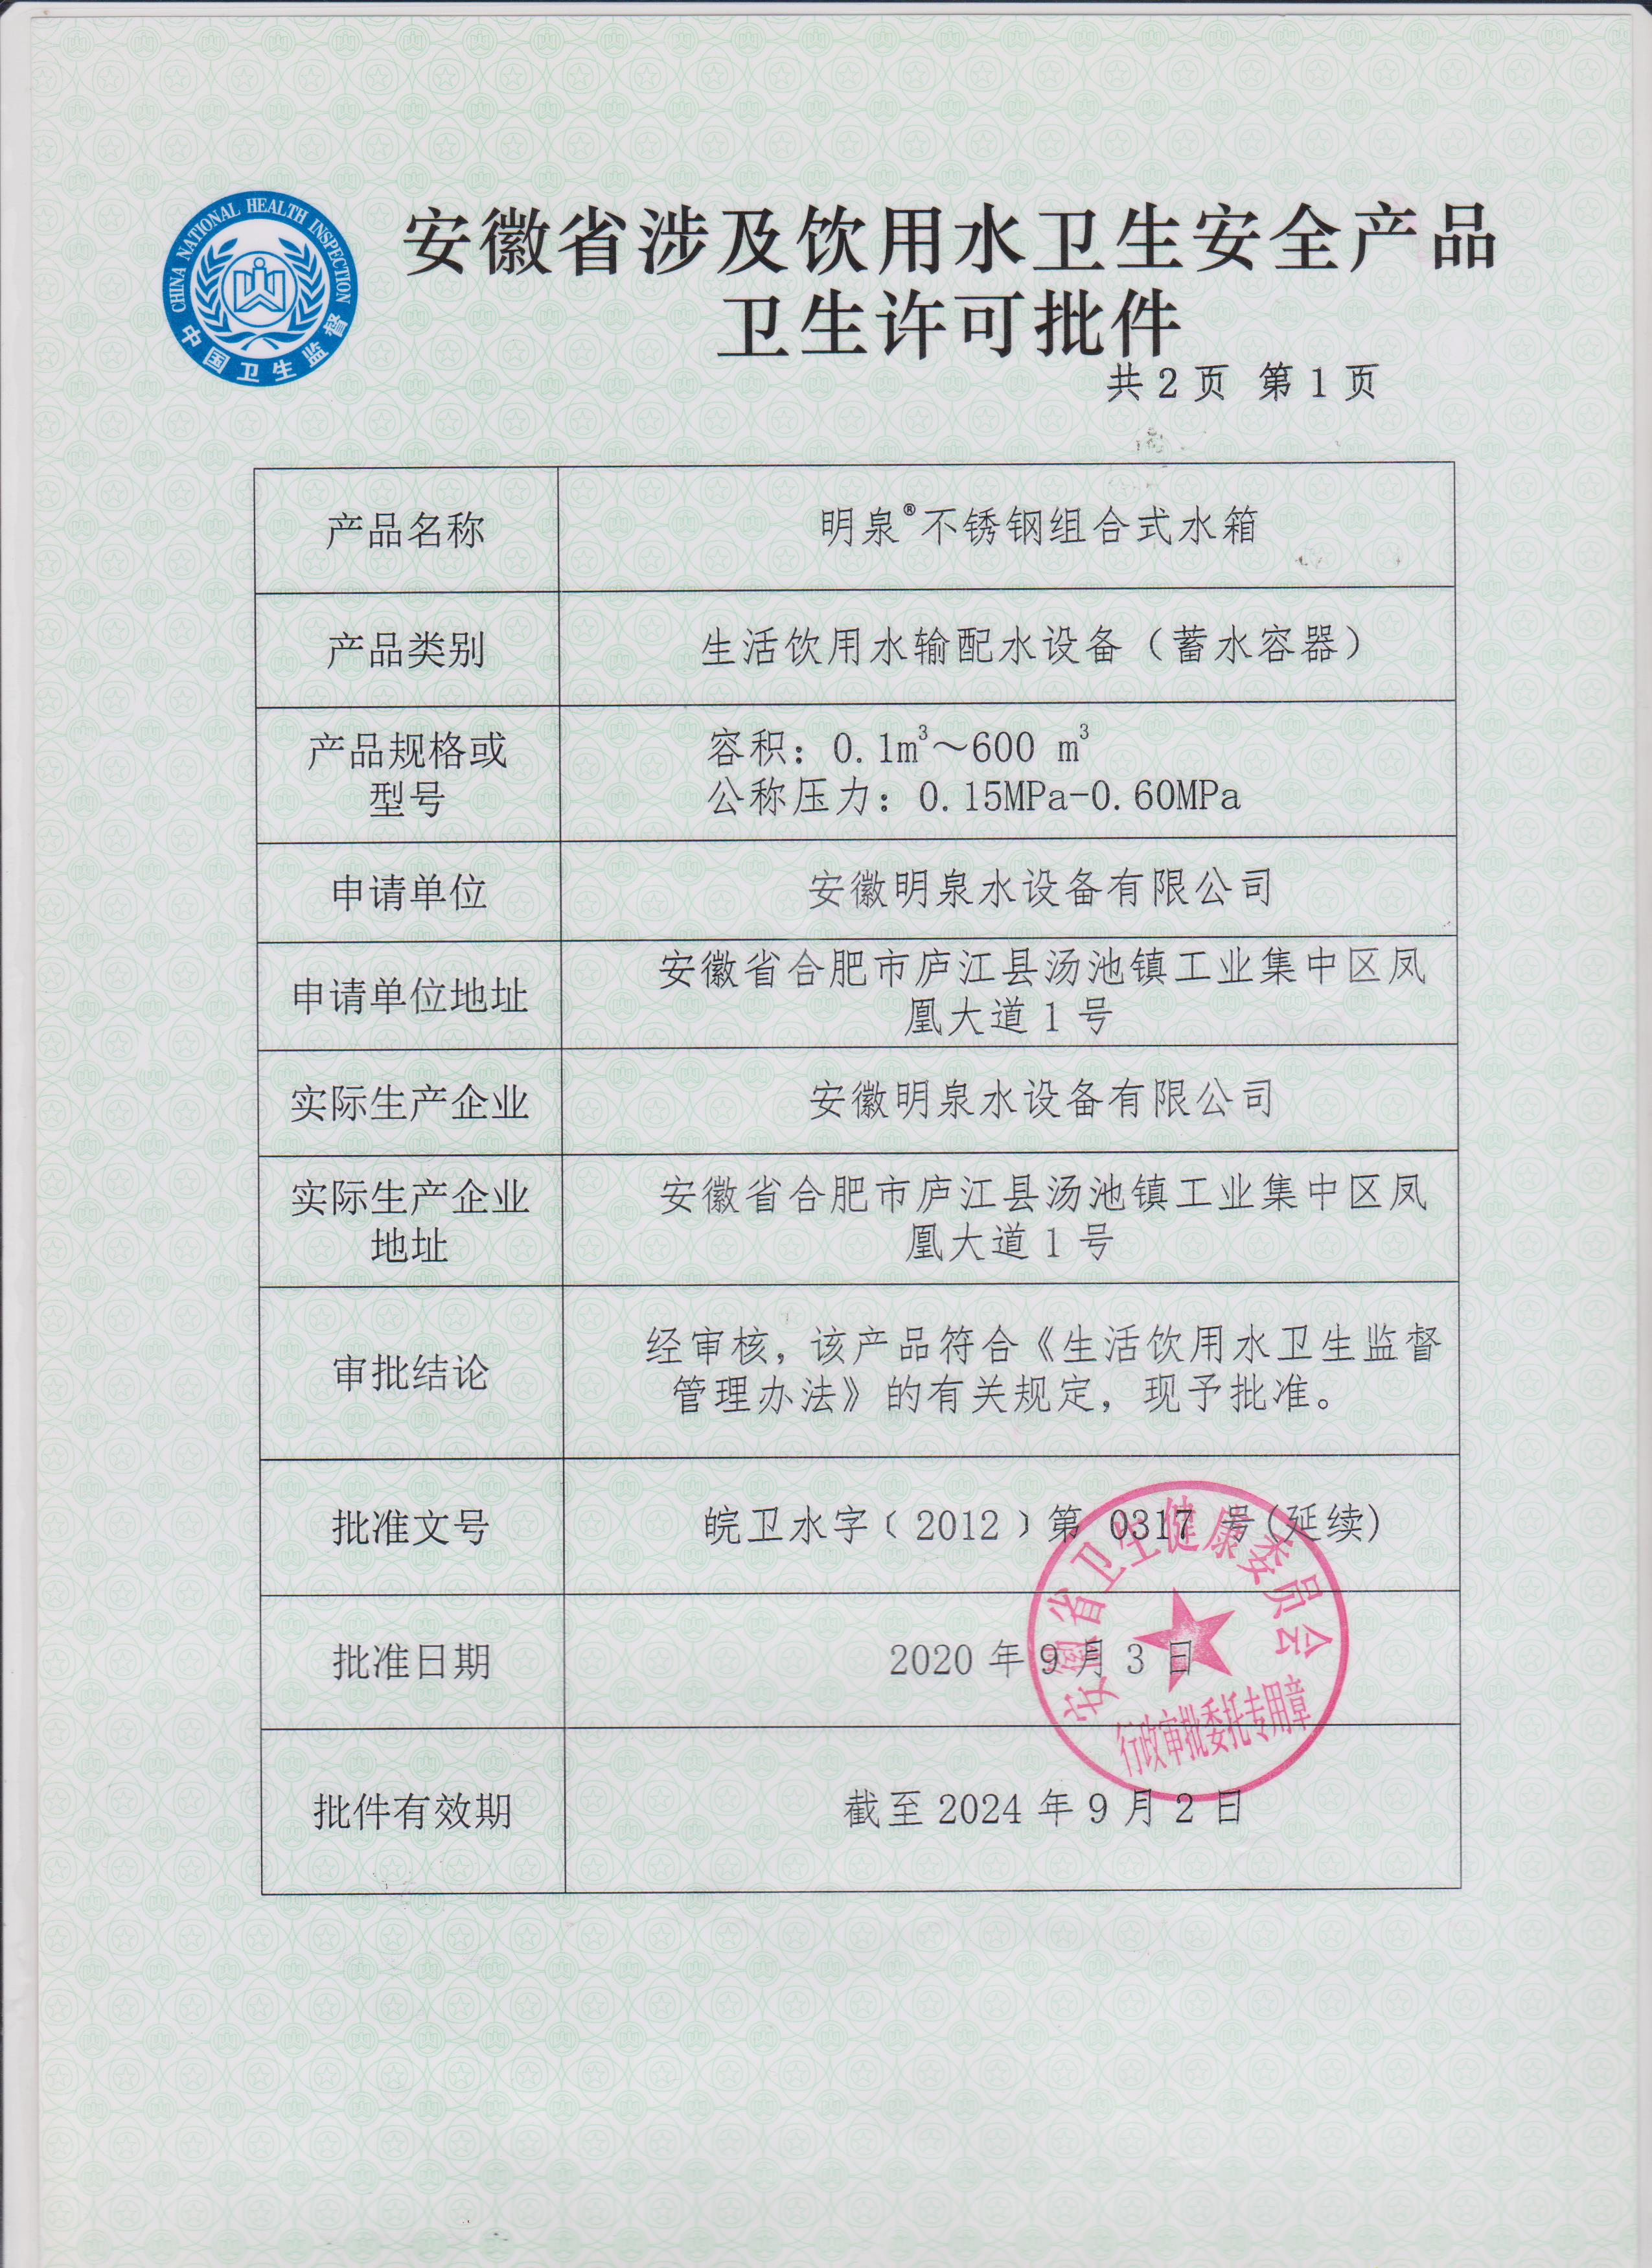 安徽省涉及飲用水衛生產品衛生許可批件